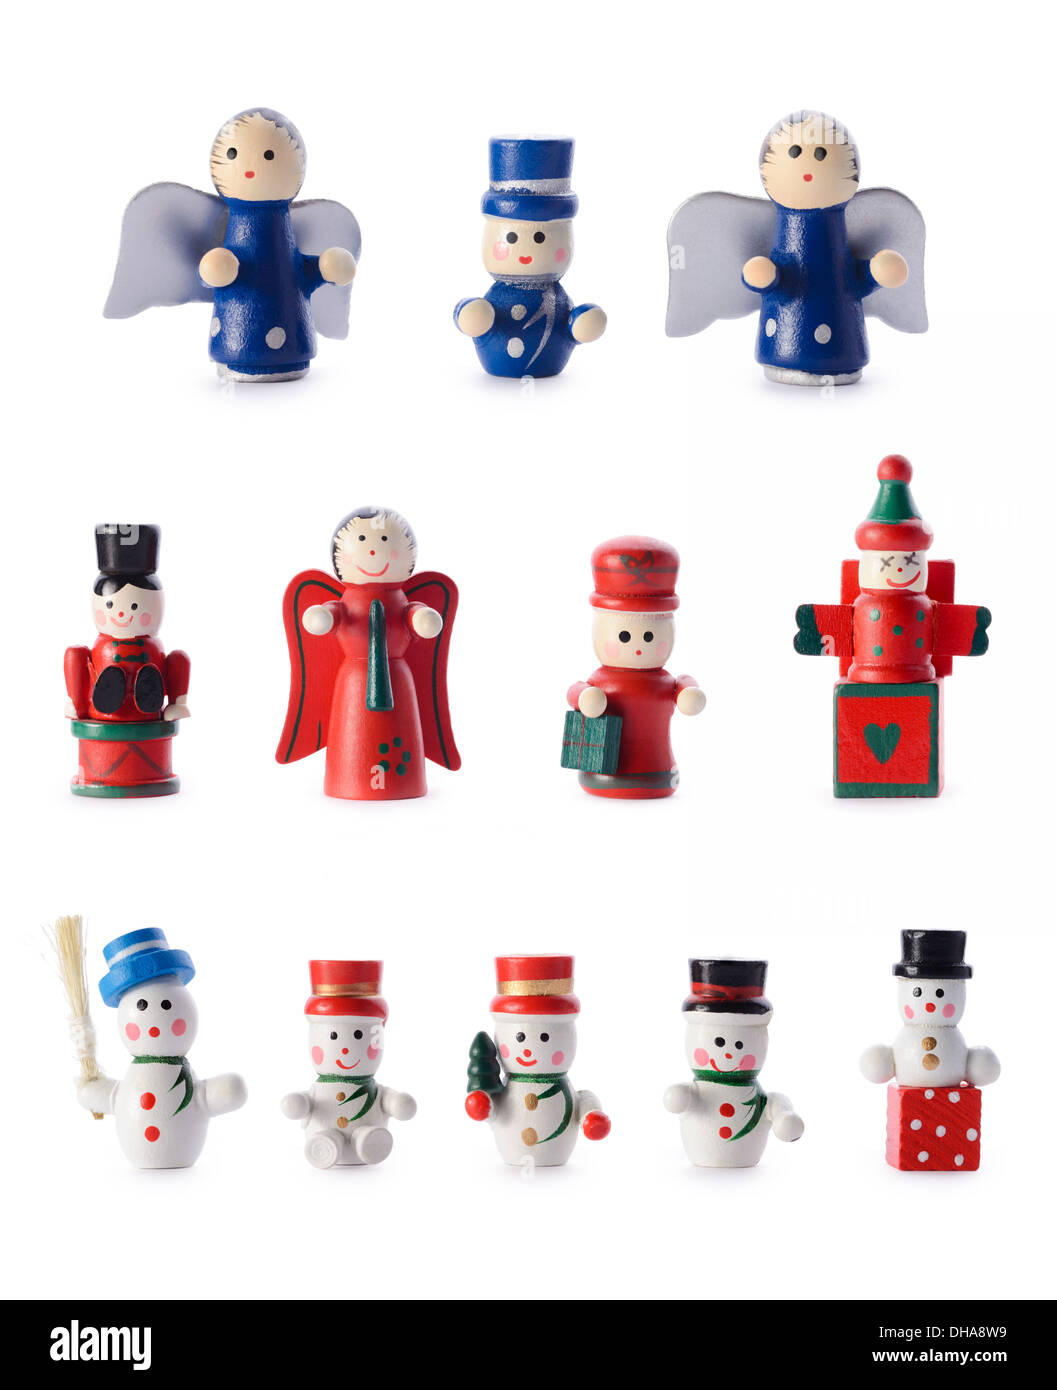 Le decorazioni di Natale: gruppo di piccole in stile retro figurine, decorazioni natalizie, isolato su sfondo bianco Foto Stock